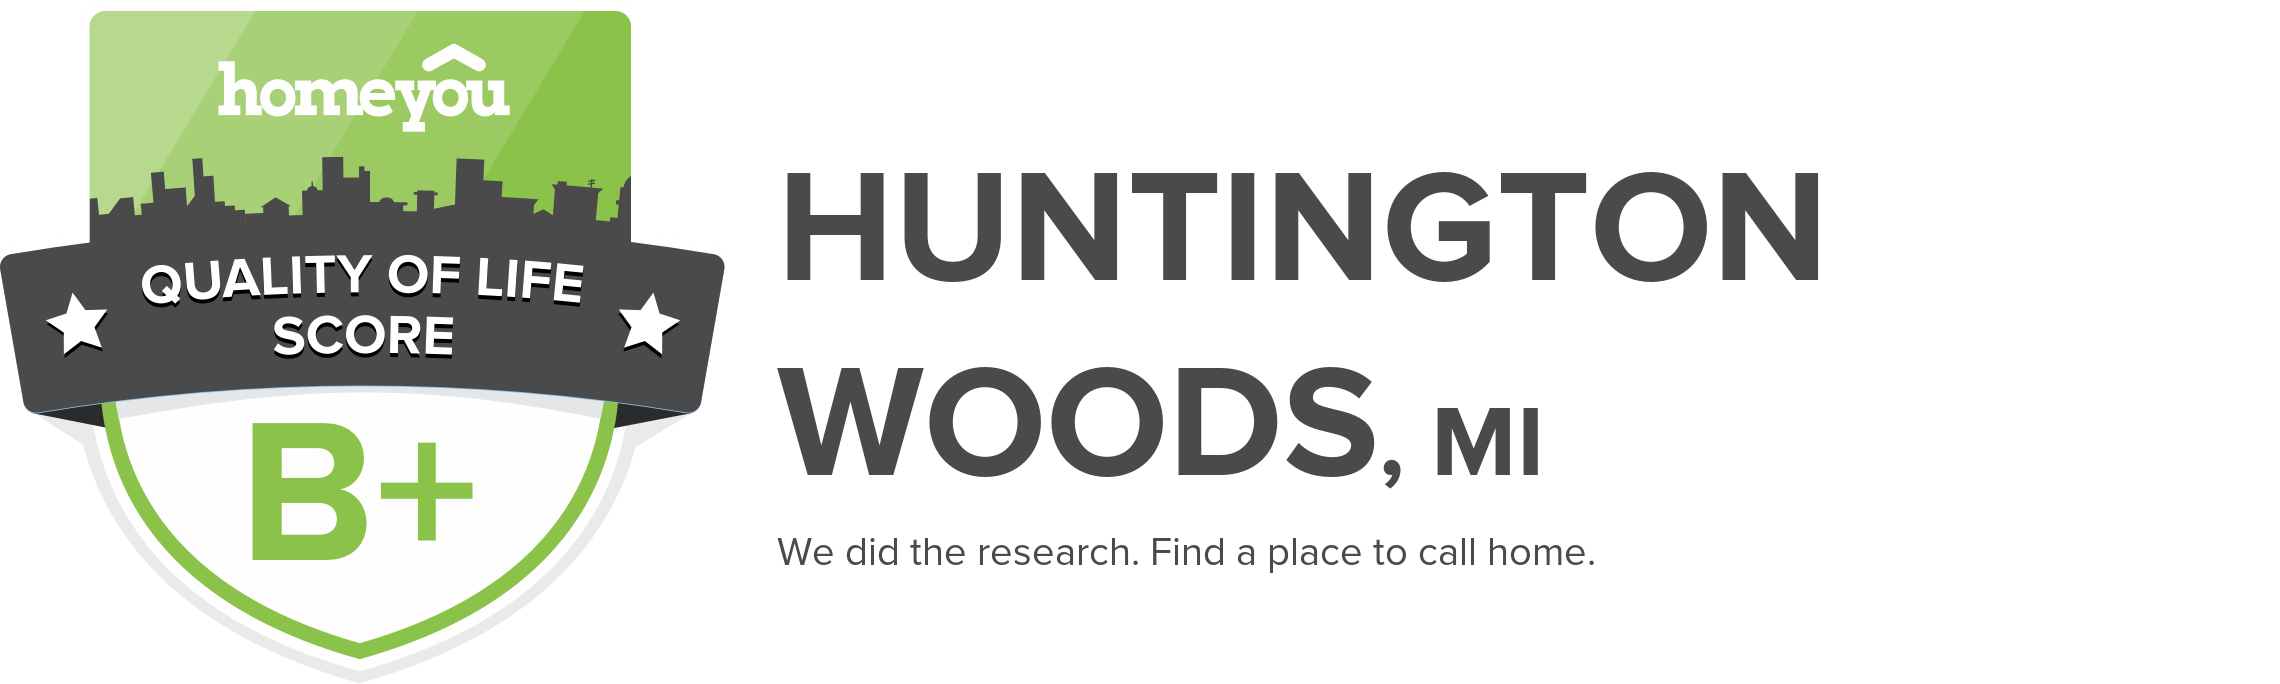 Huntington Woods, MI